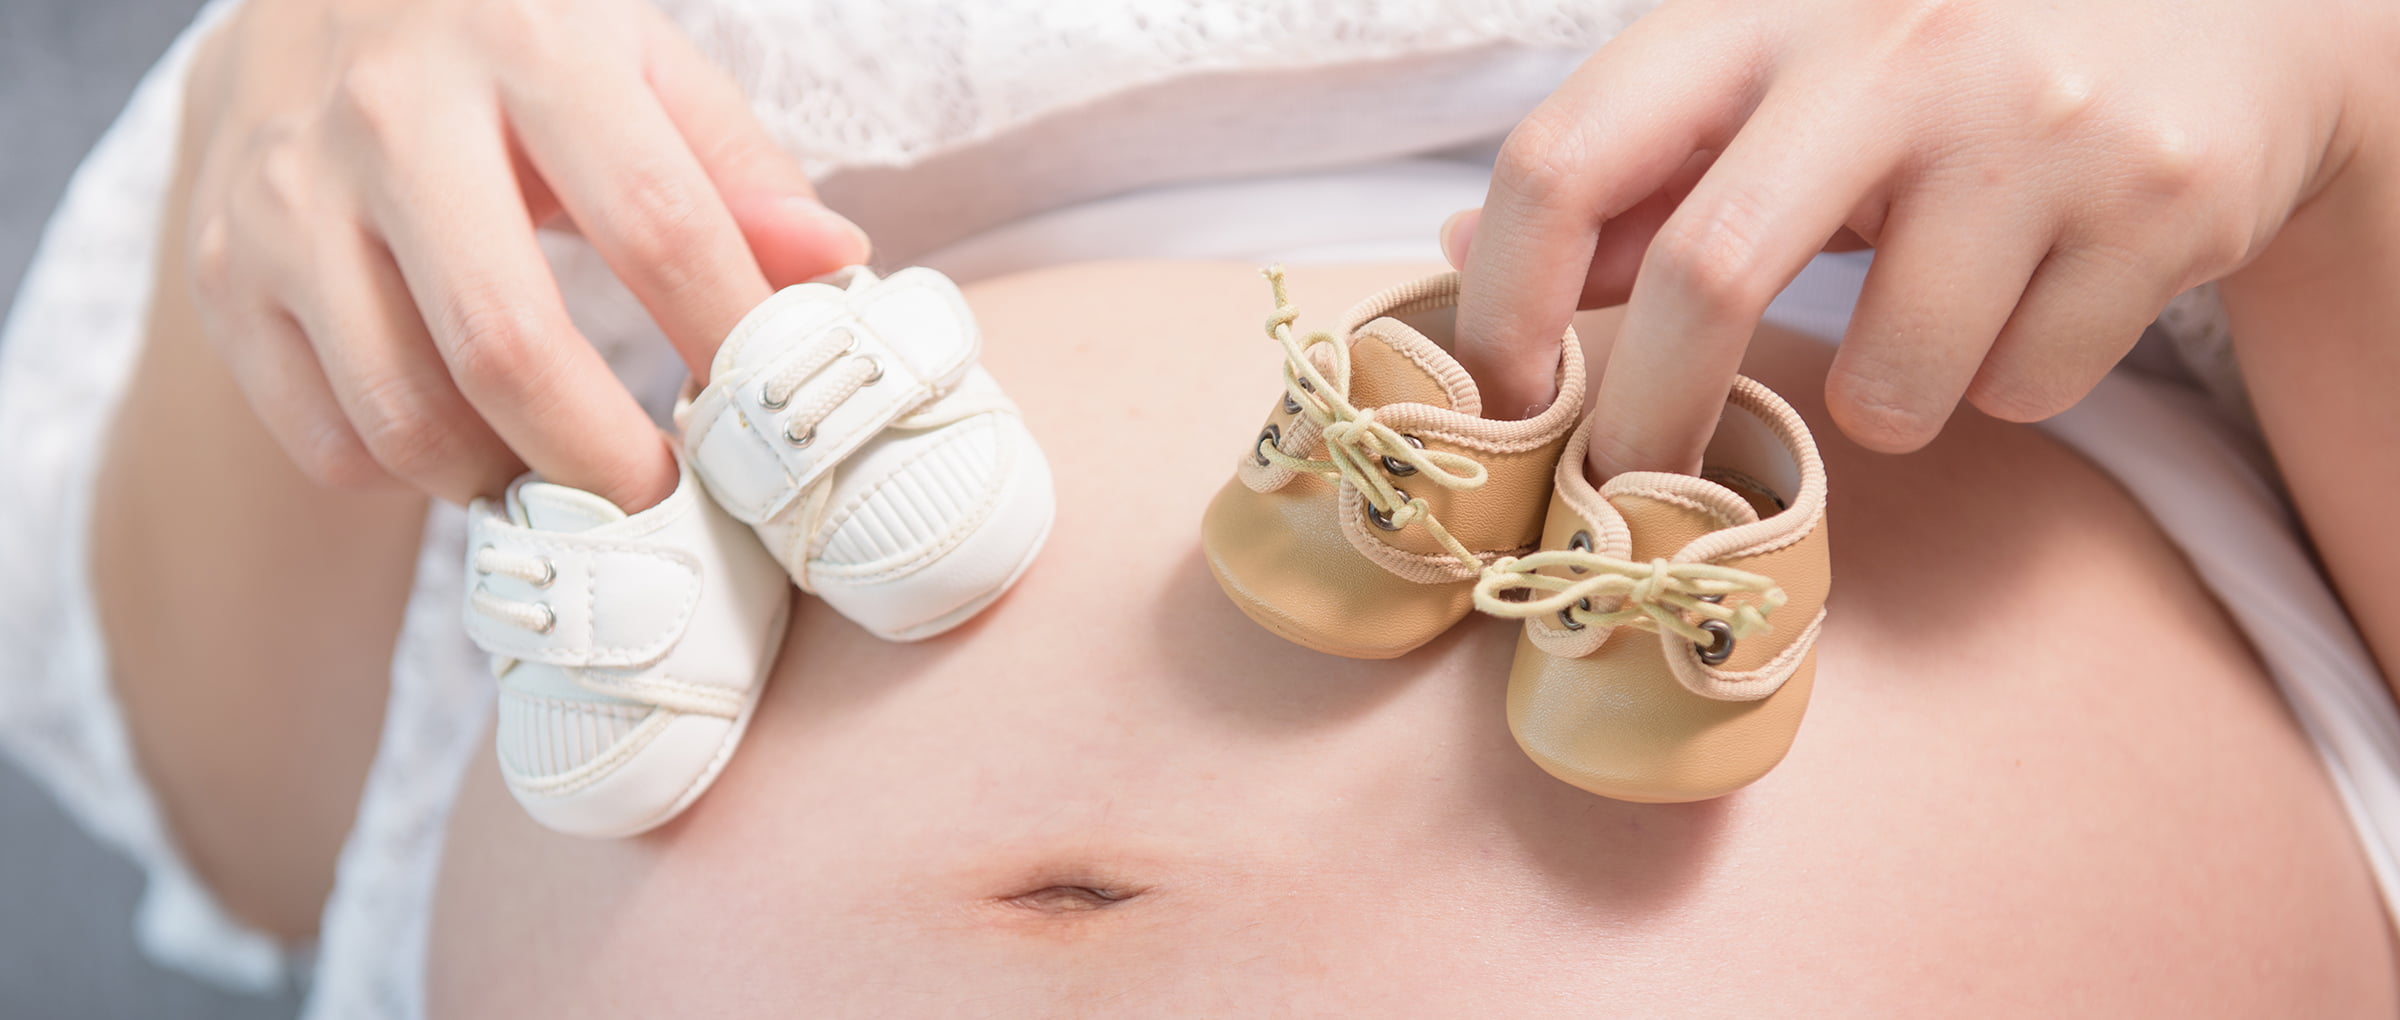 Une mère porteuse met au monde deux bébés génétiquement différents